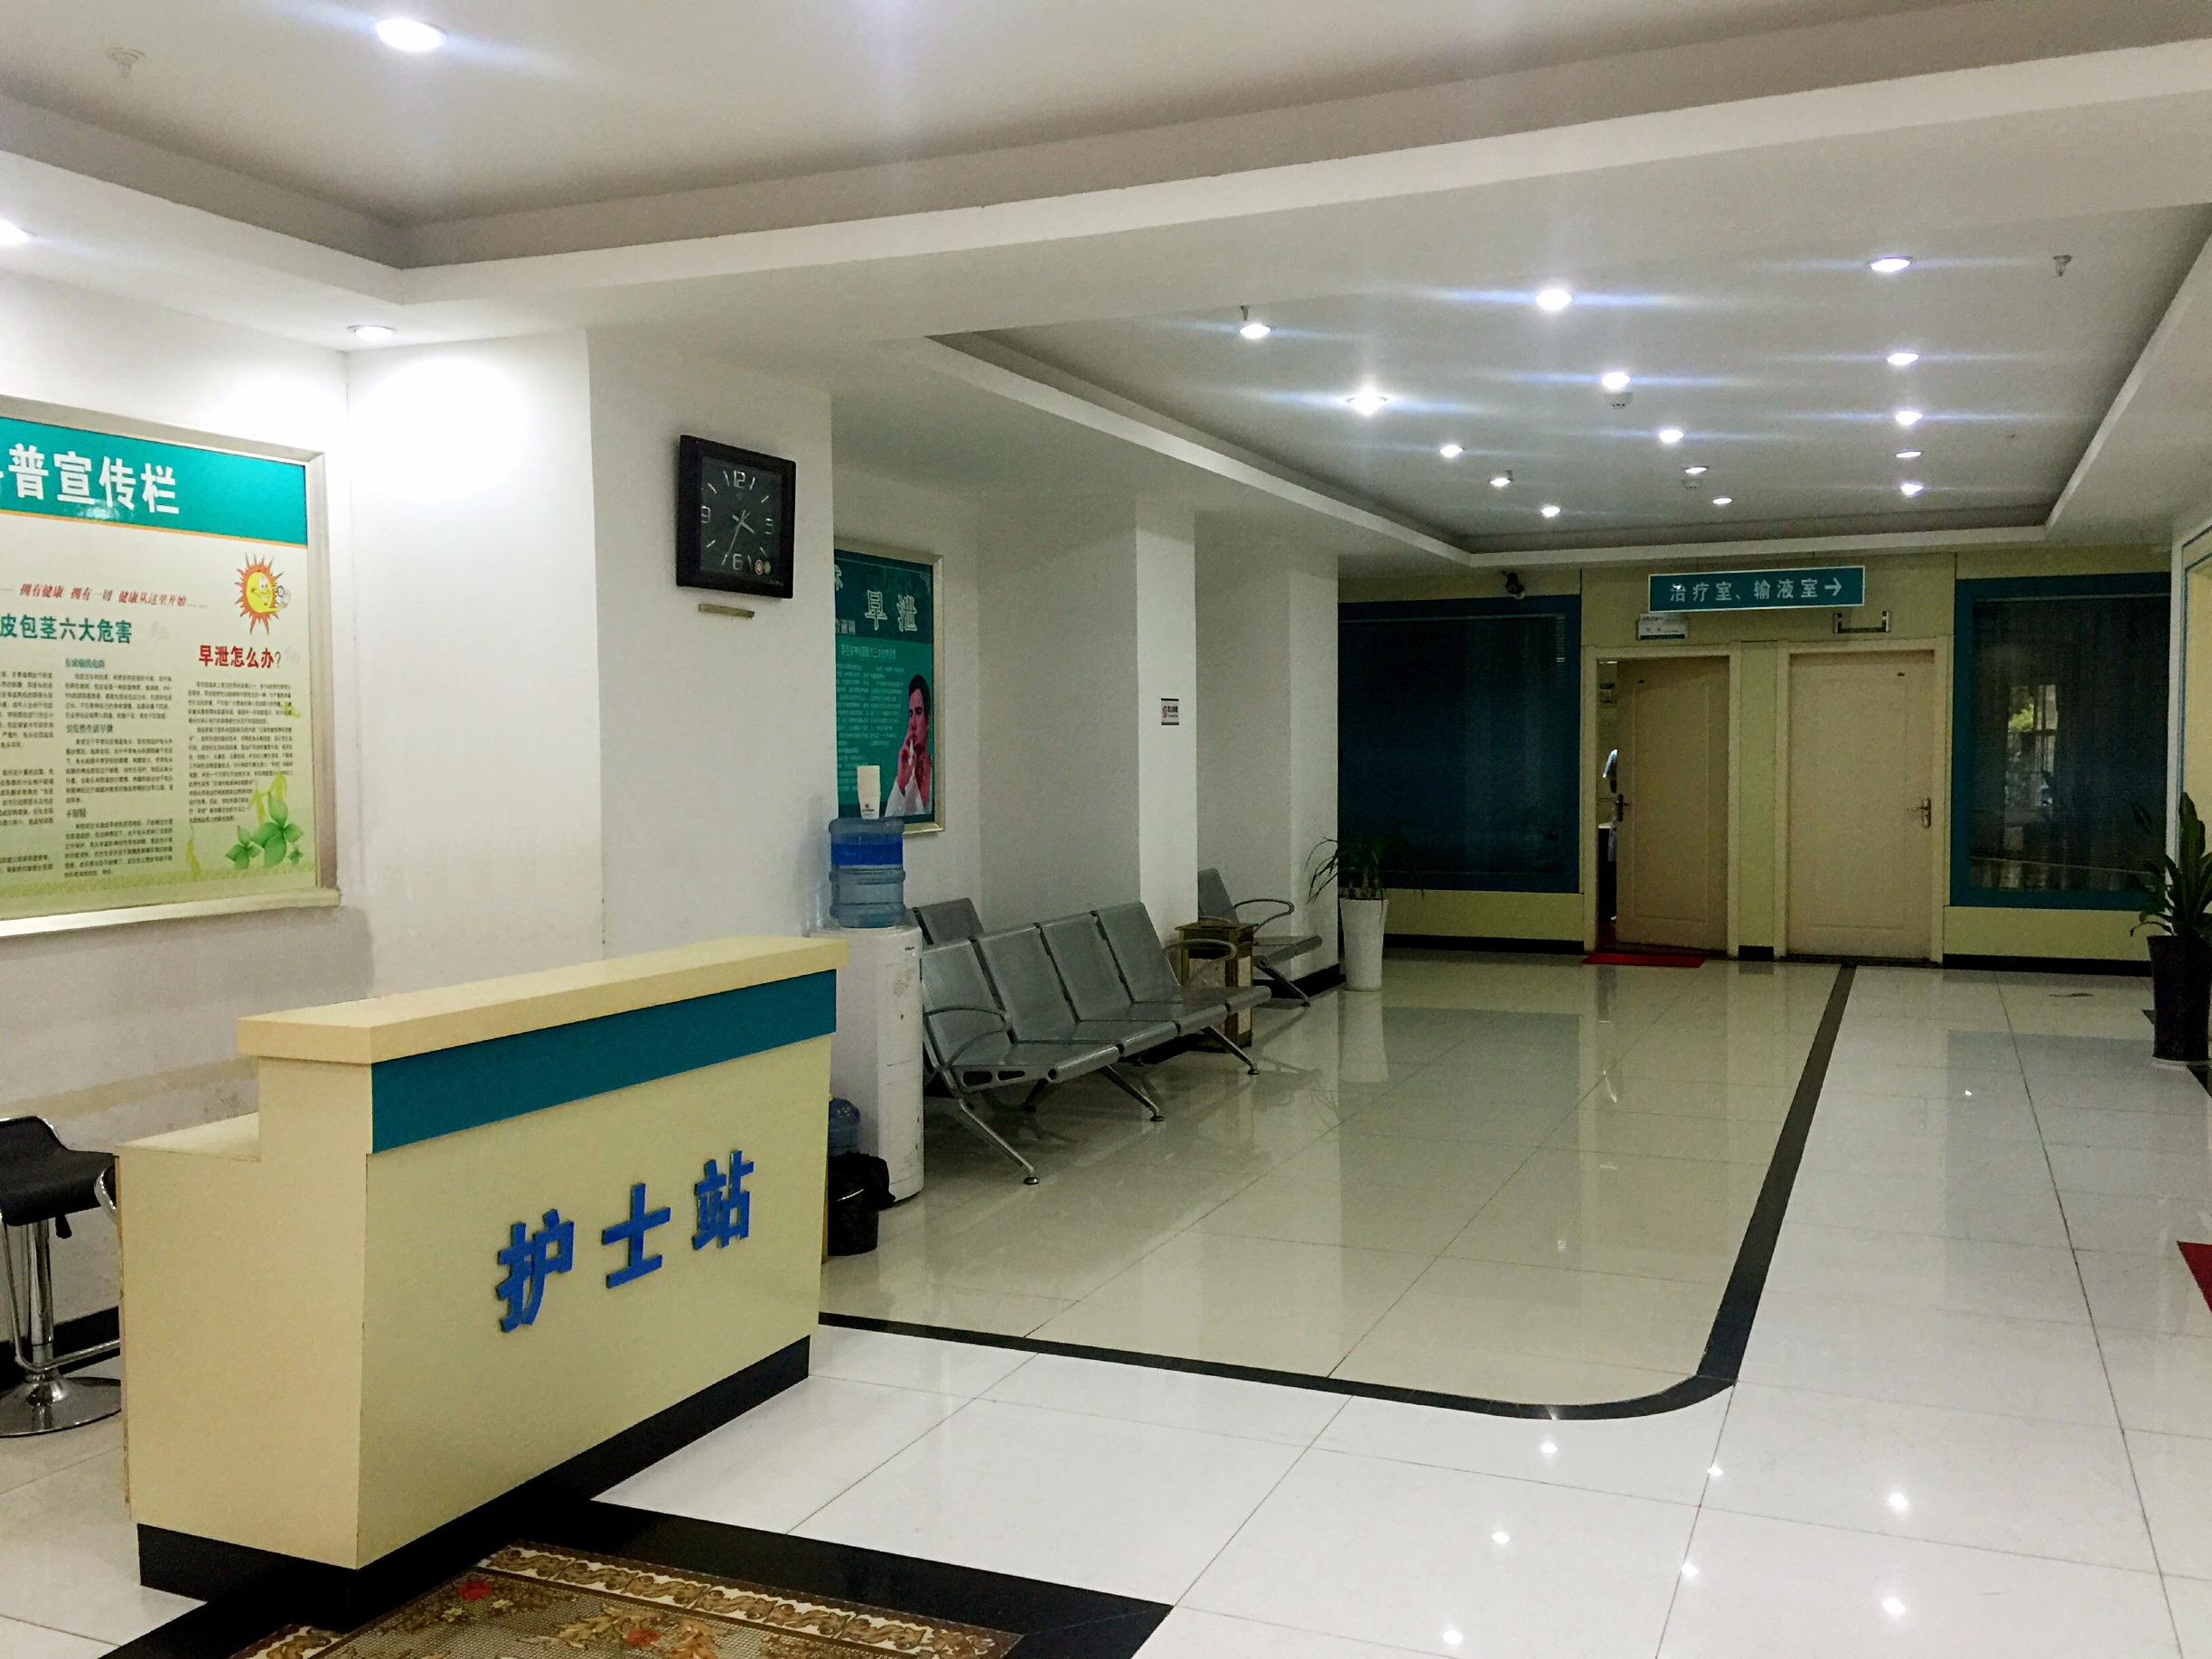 优享资讯 | 九龙医院52岁男病人昨晚自行离院 院方呼吁市民留意